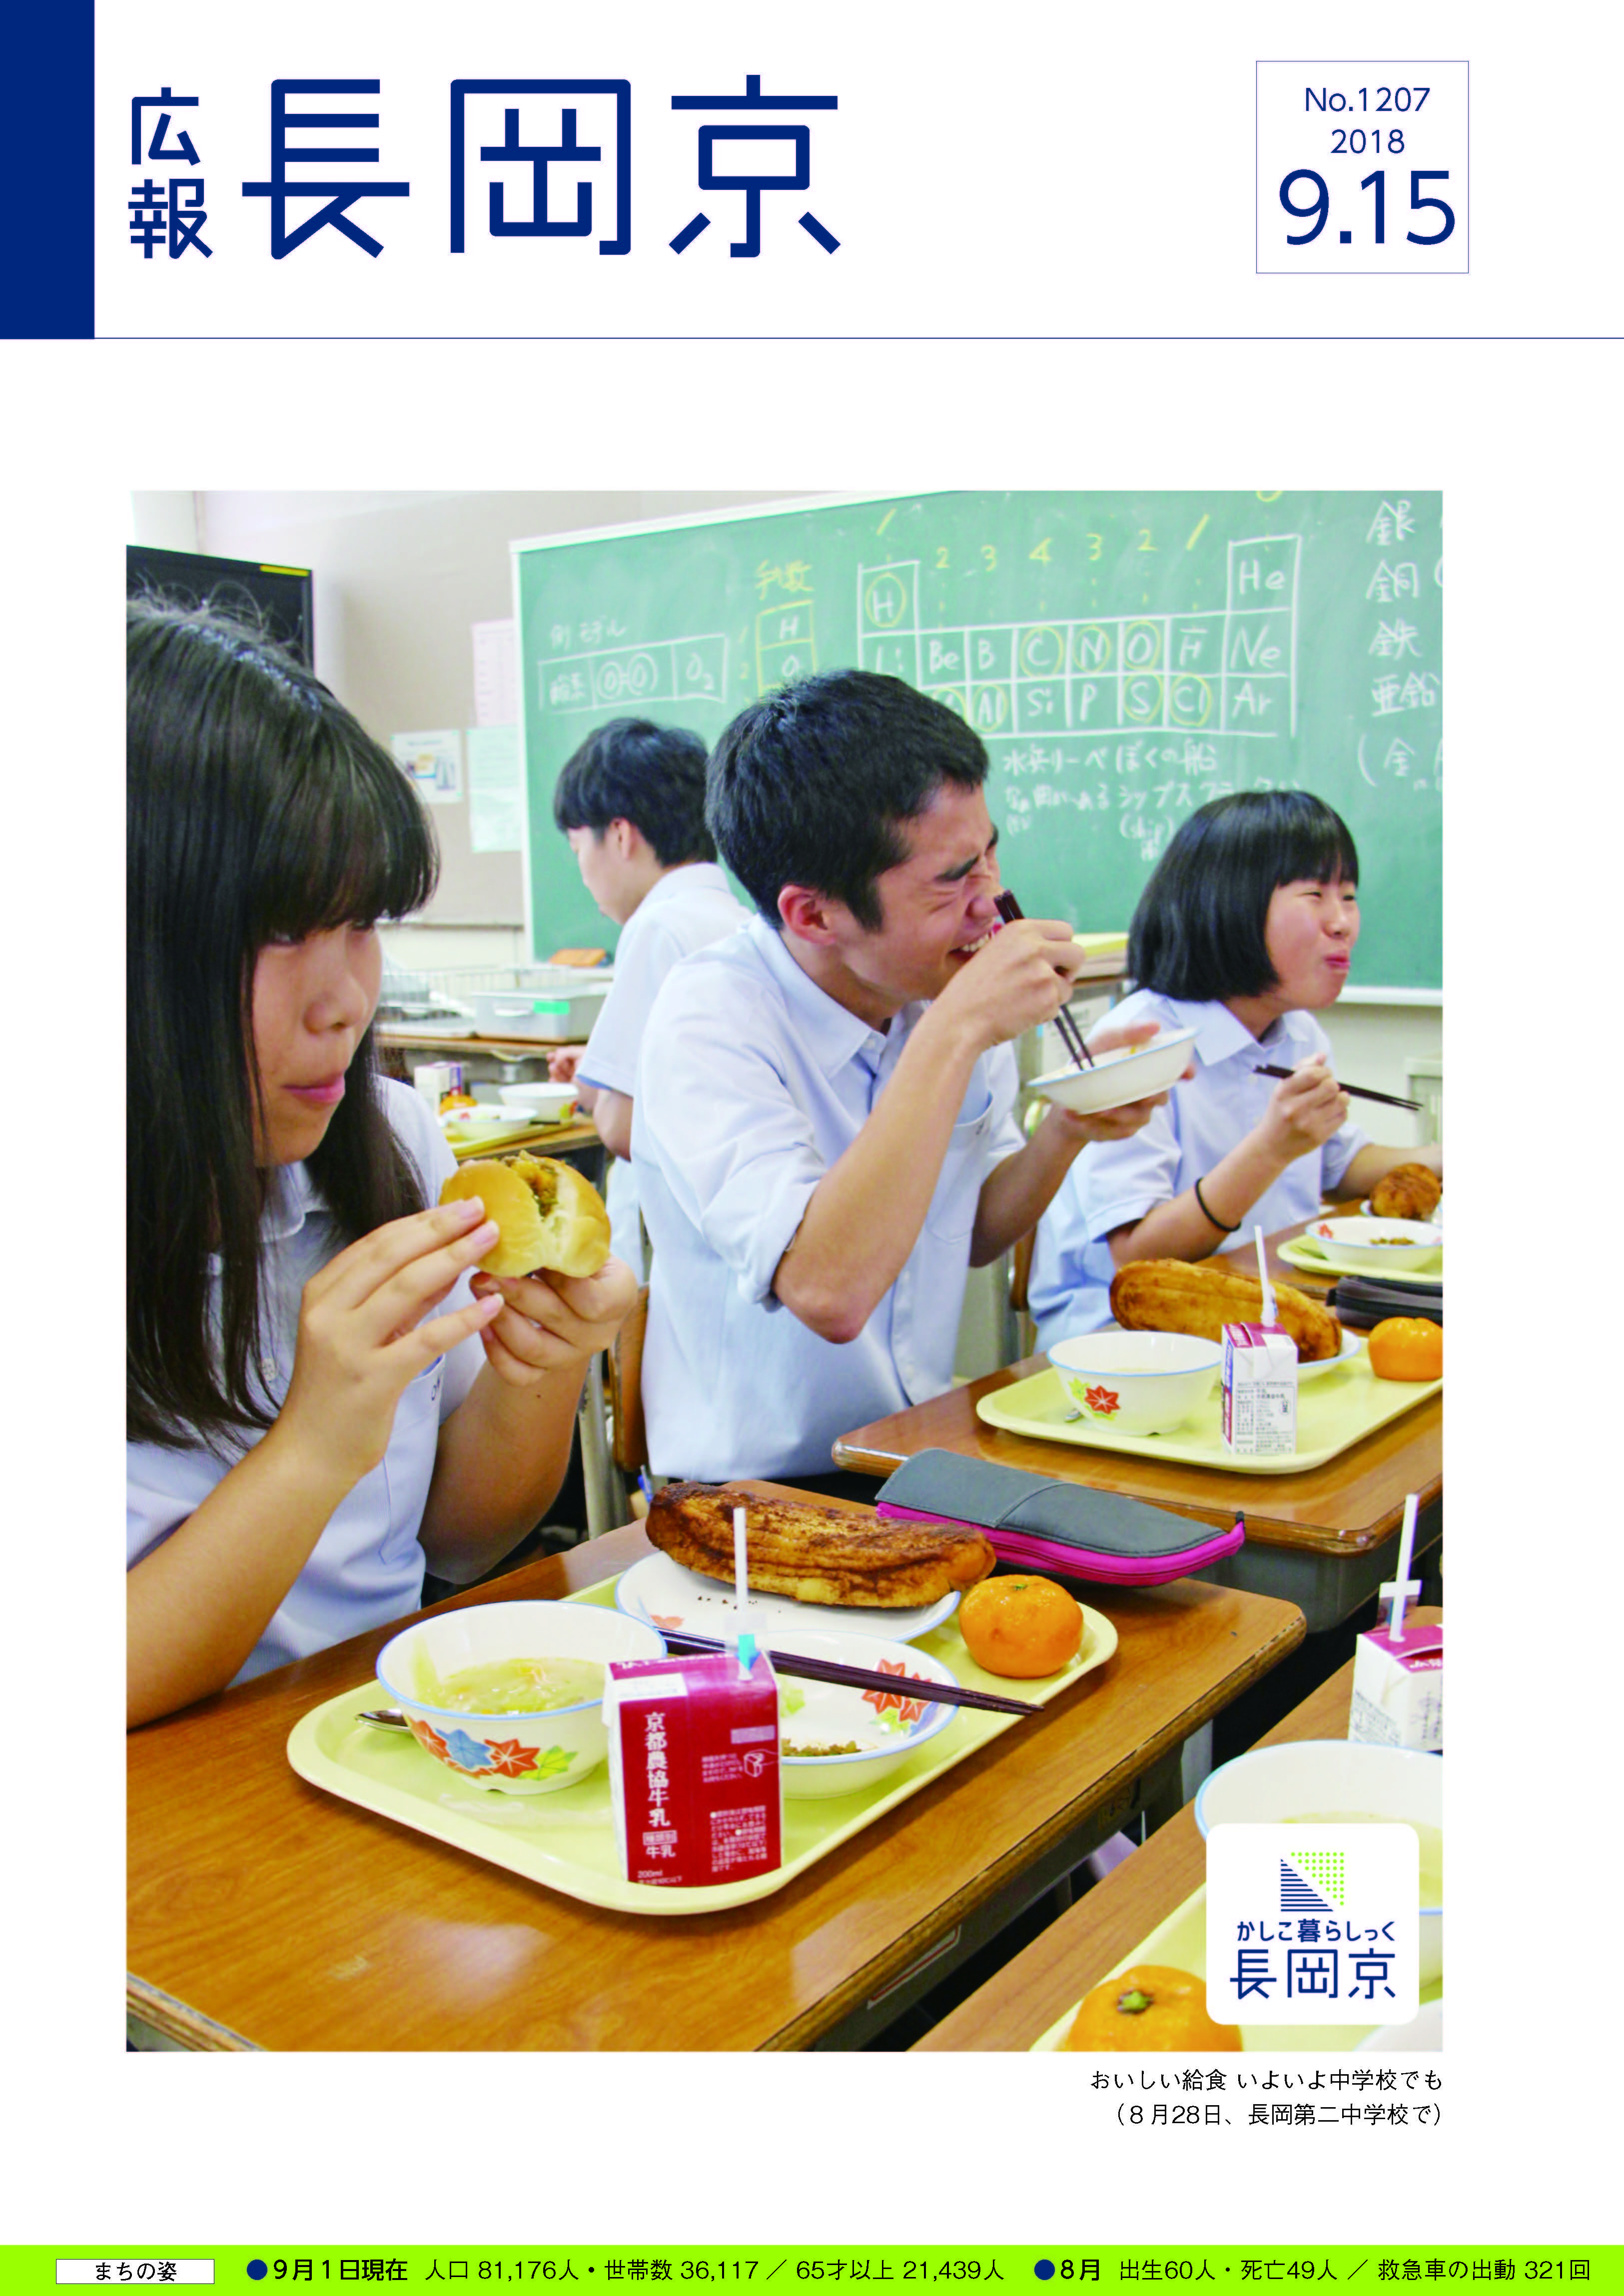 9月15日号の表紙画像。中学校給食の様子